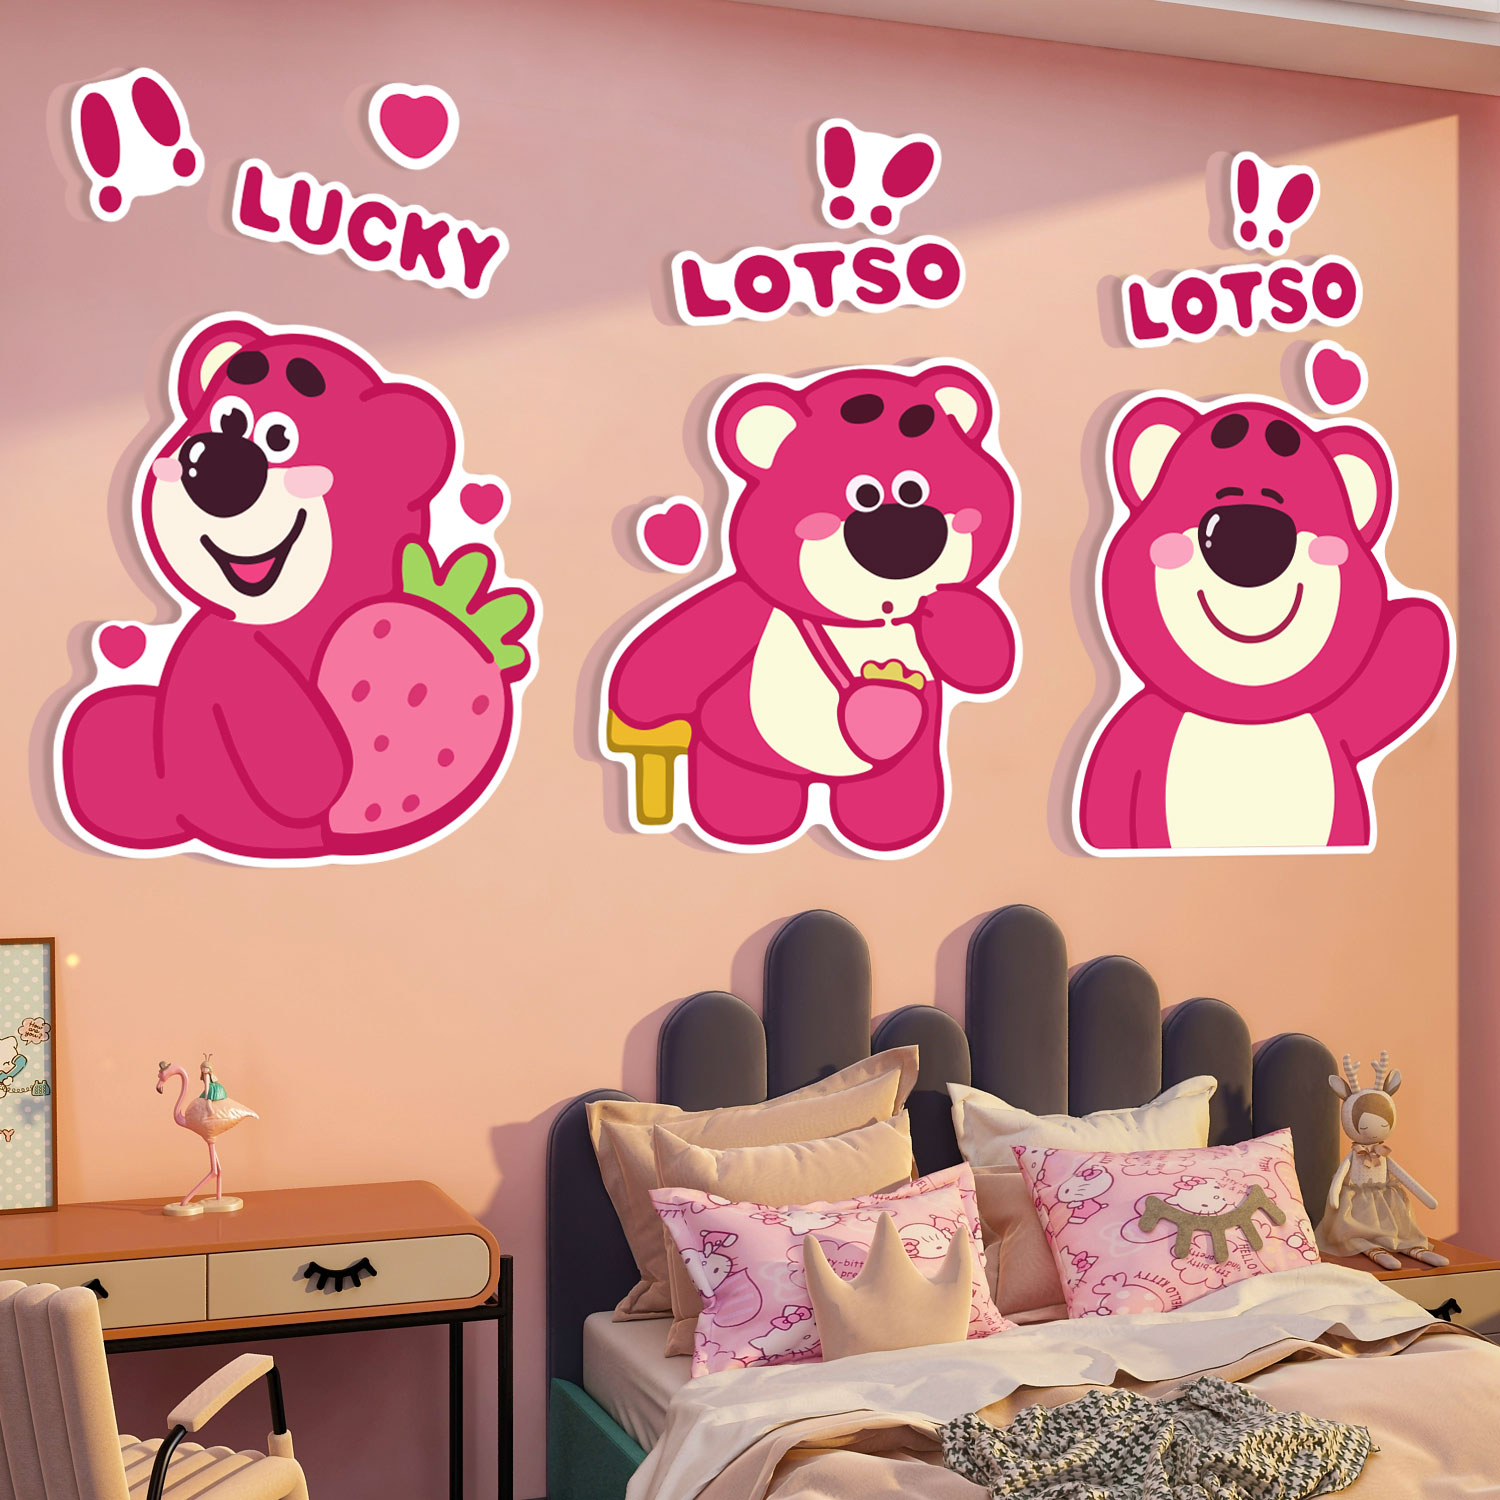 网红公仔儿童房间布置草莓熊贴纸壁画女孩公主卧室床头墙面装饰品